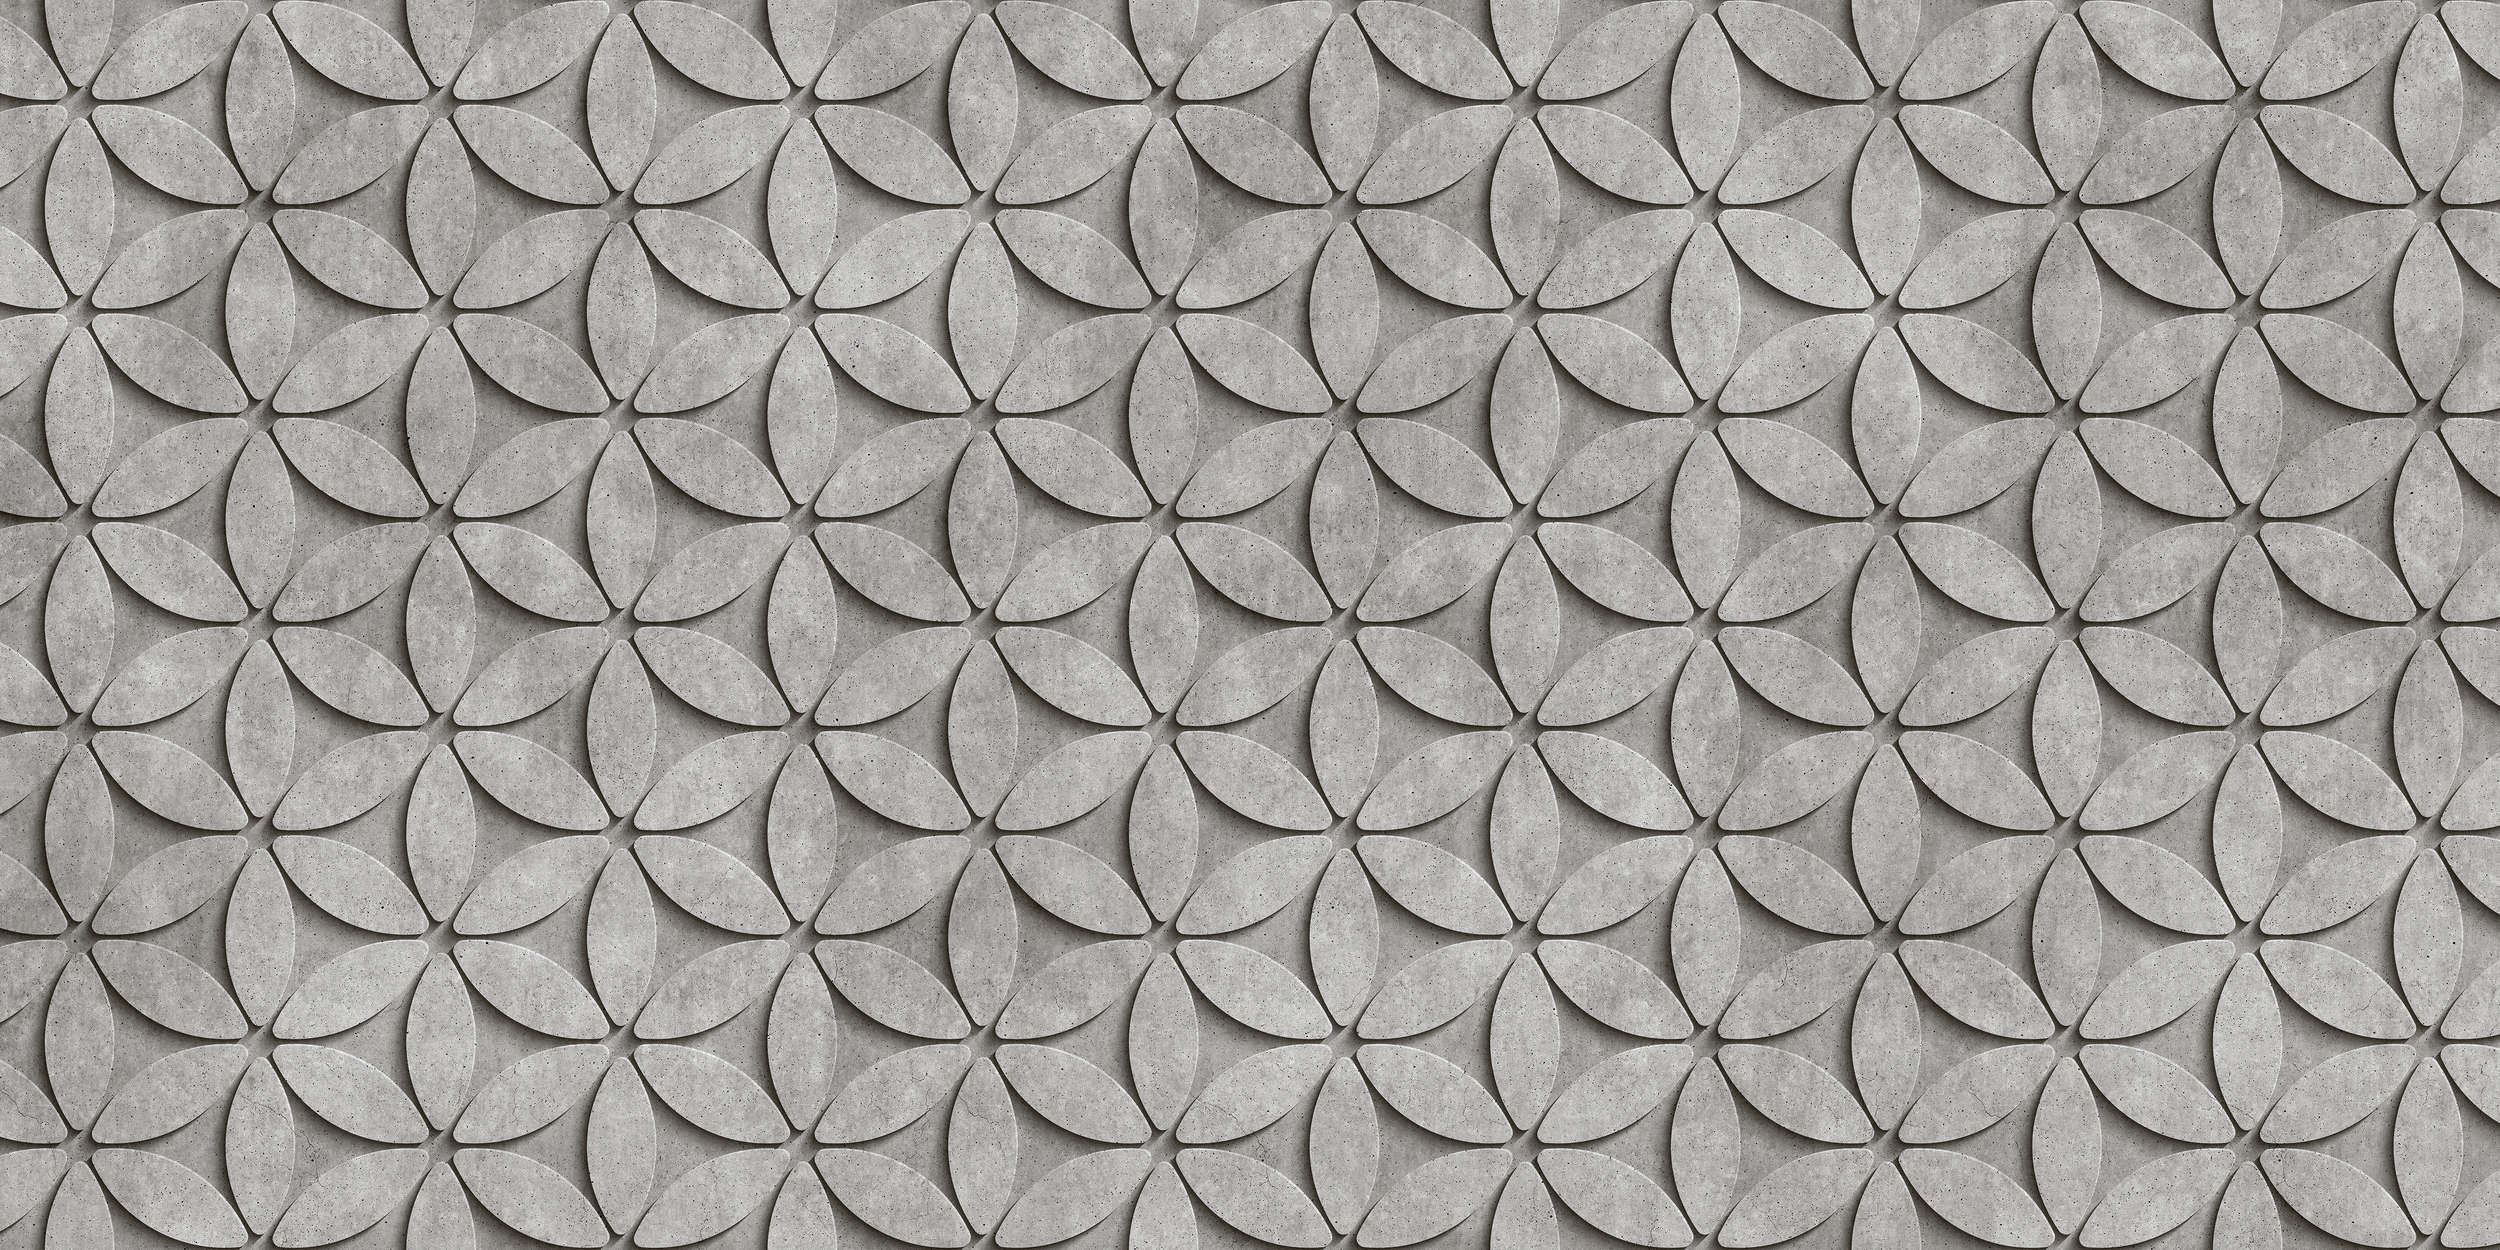             Tile 1 - papier peint en polygone de béton 3D cool - gris, noir | nacré intissé lisse
        